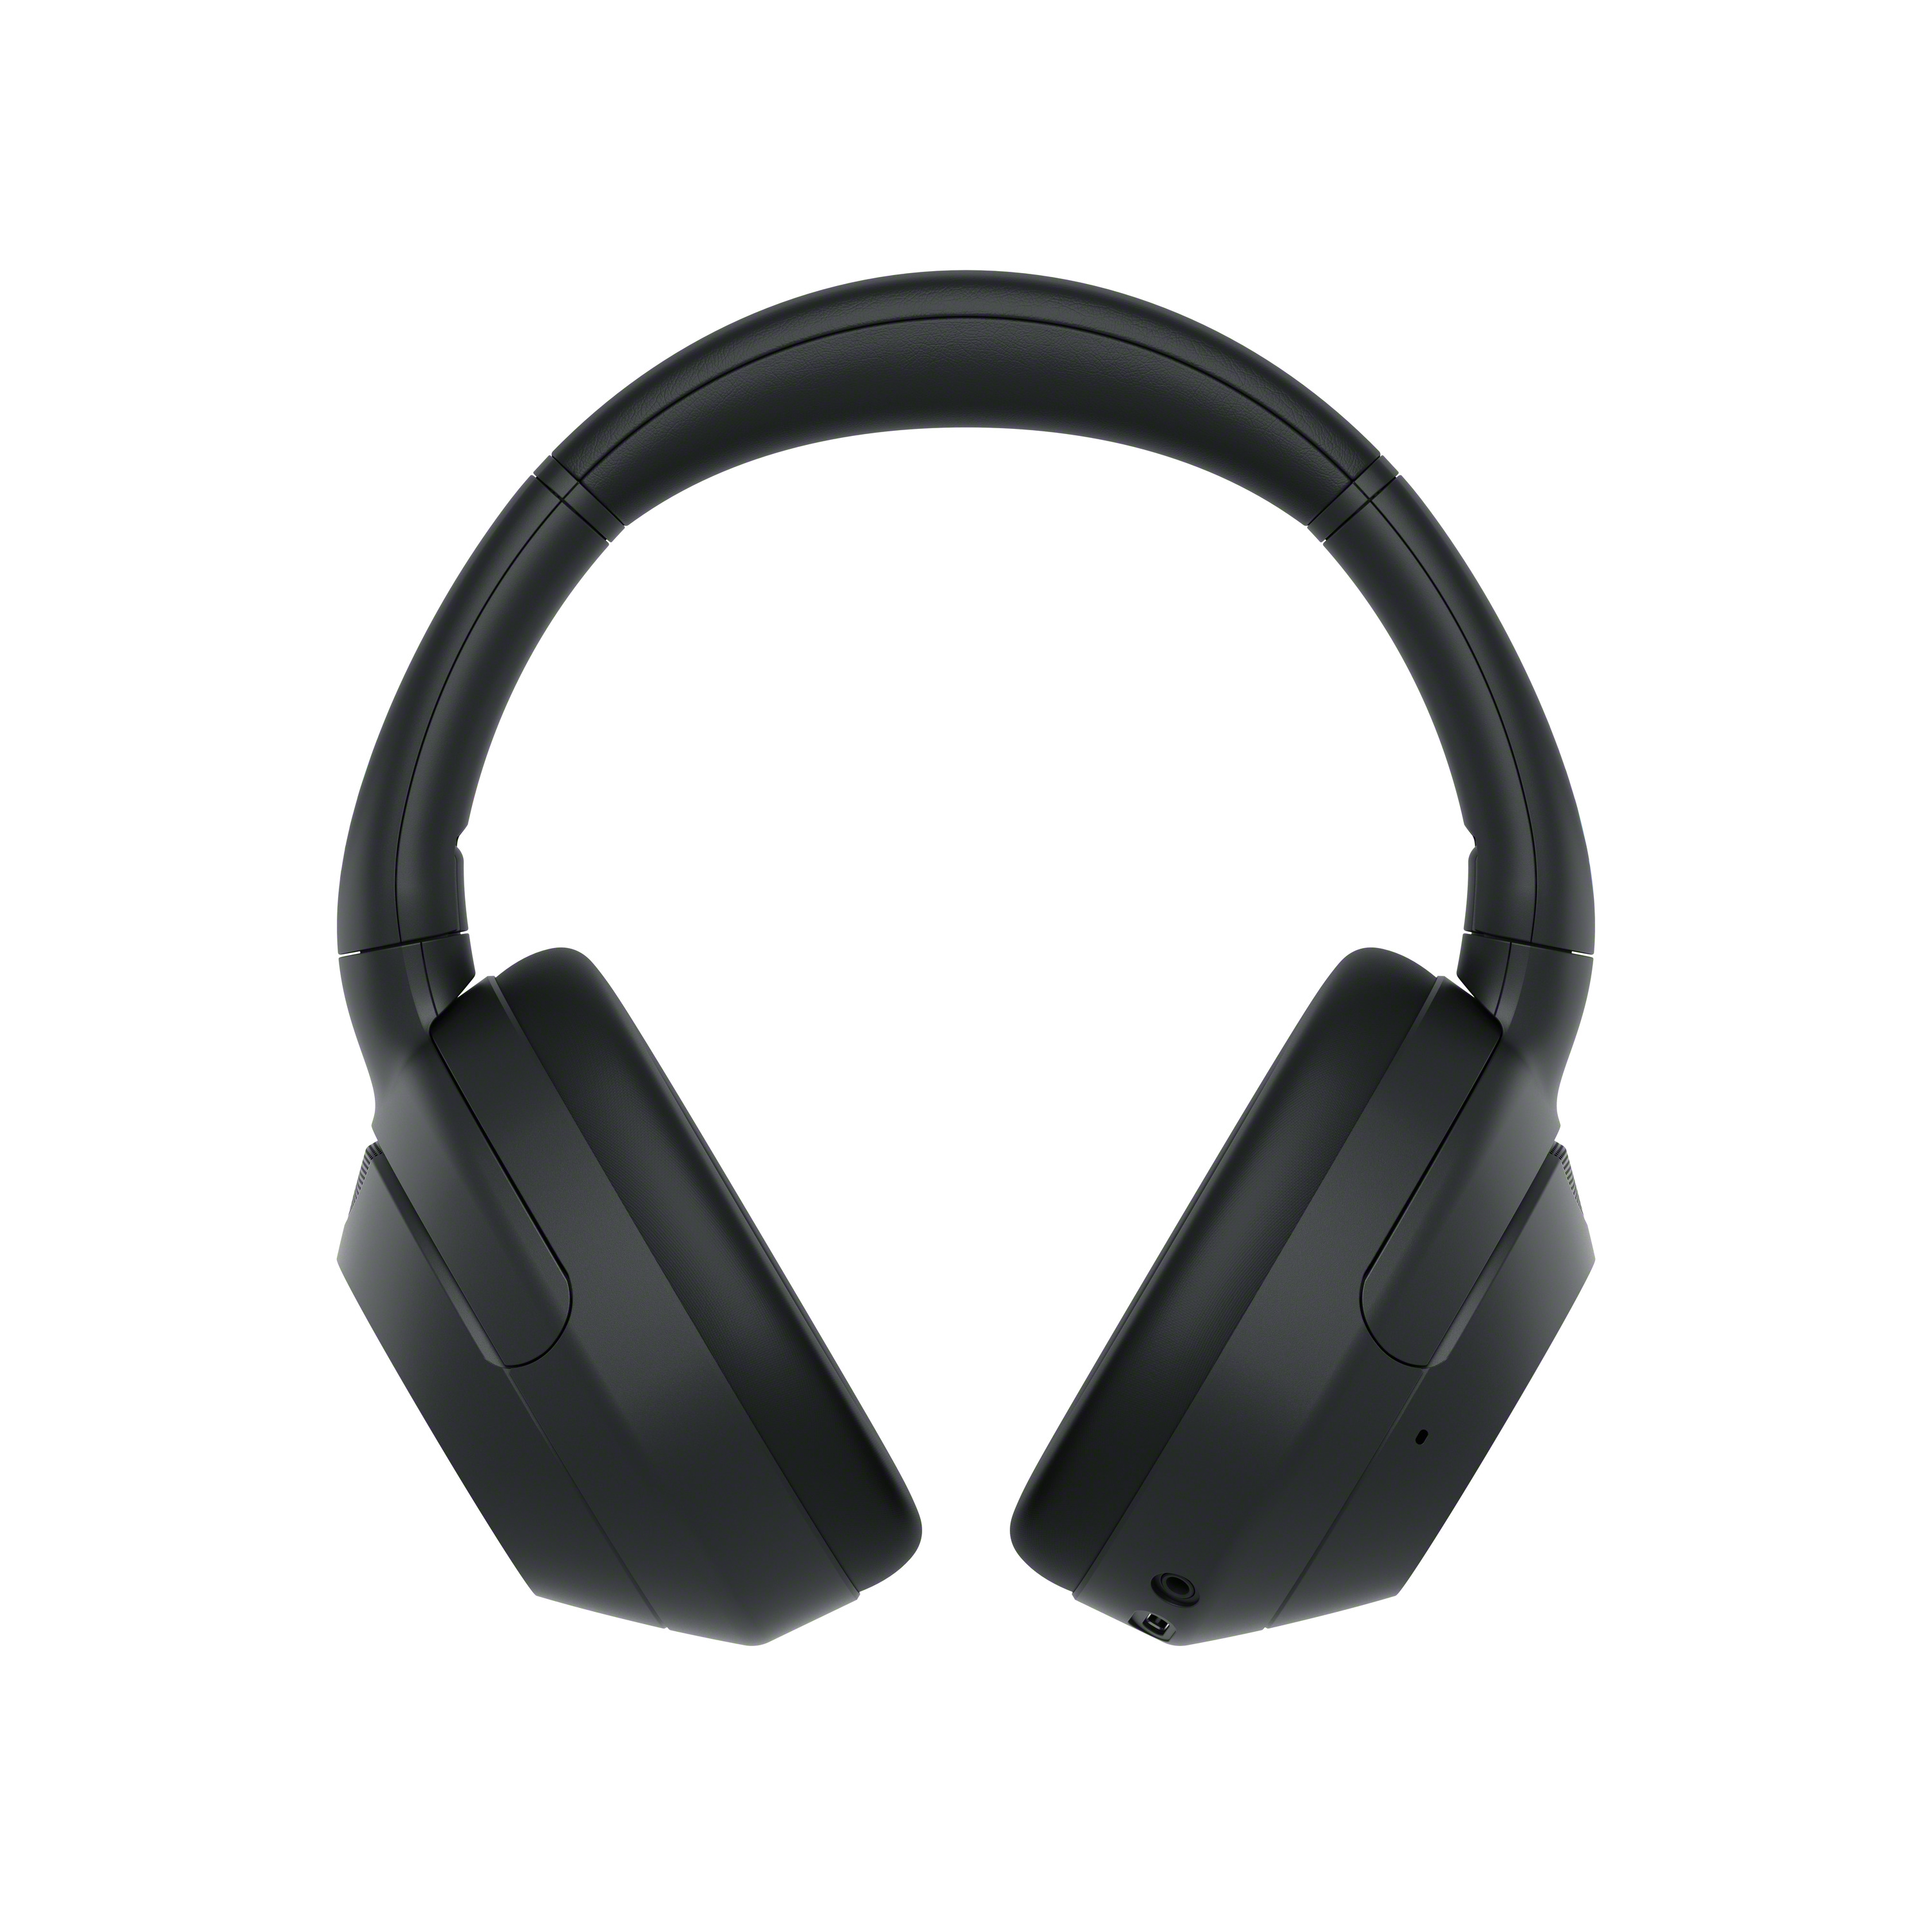 Sony ra mắt tai nghe không dây ULT WEAR mới: Phục vụ những bass-head- Ảnh 6.